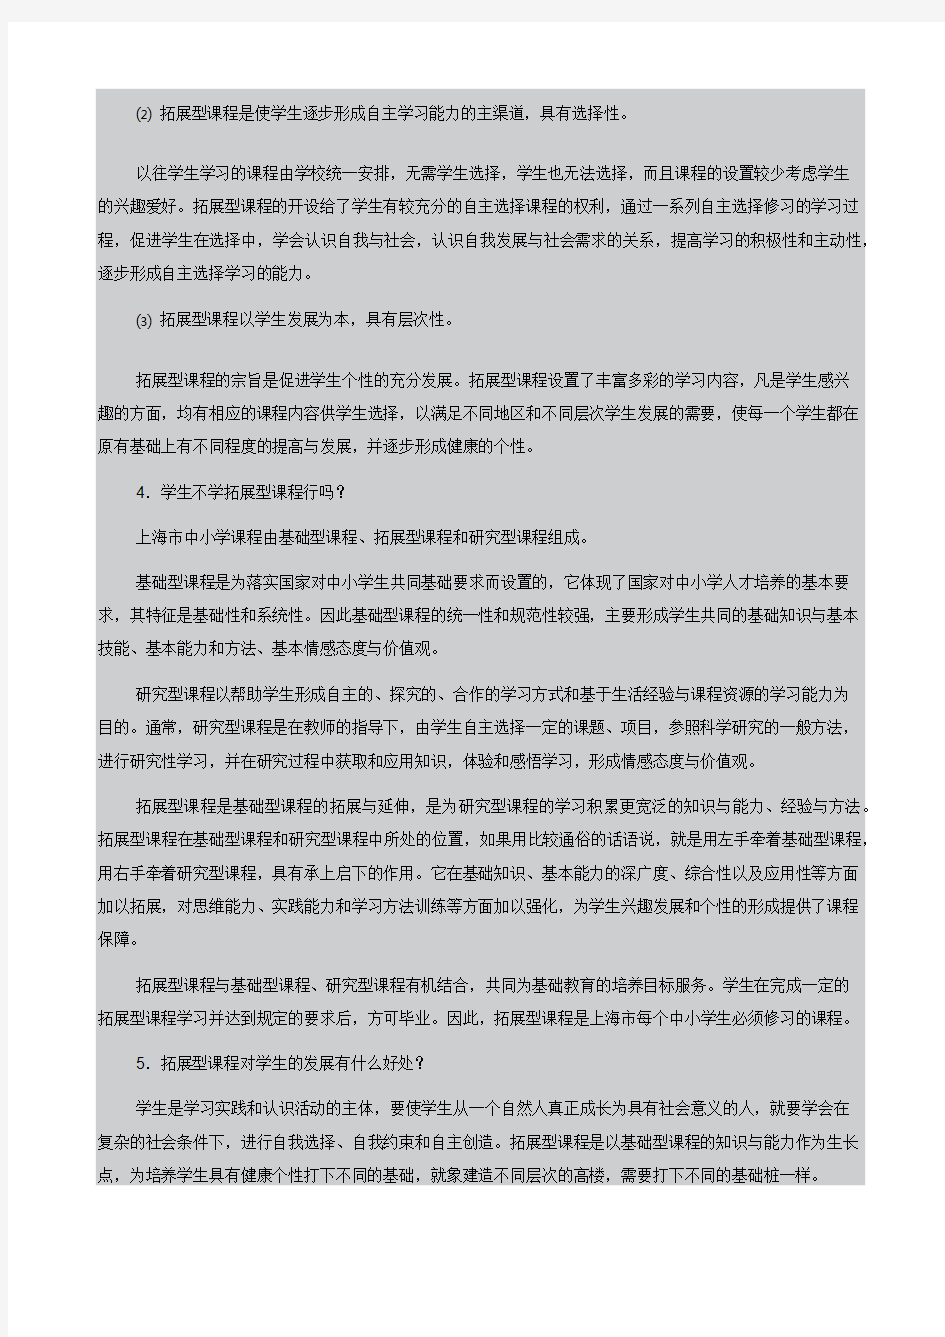 《上海市中小学拓展型课程指导纲要稿》的说明